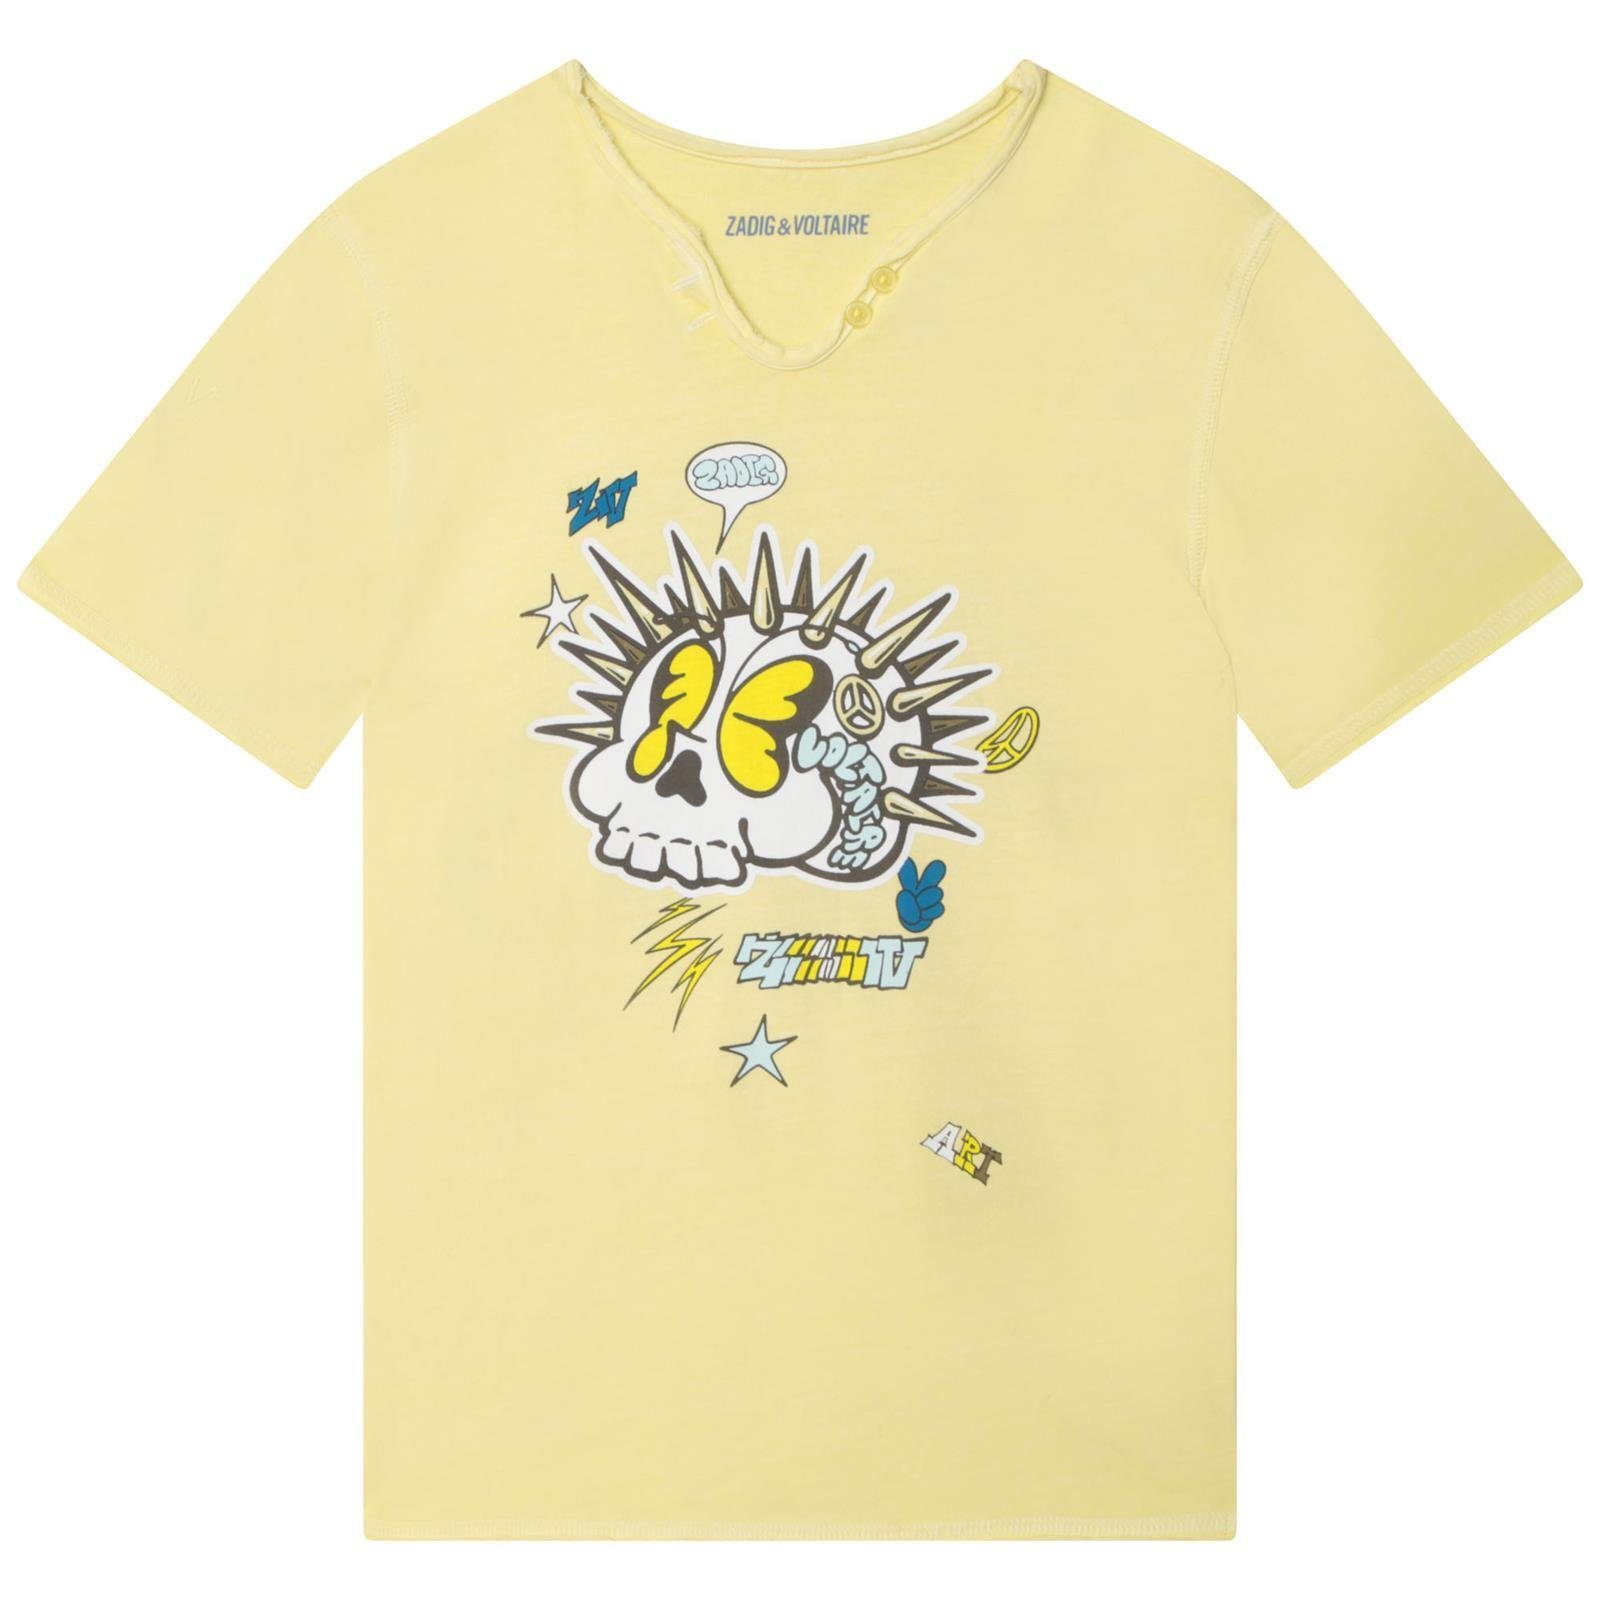 ZADIG & VOLTAIRE Print-Shirt Zadig & Voltaire T-Shirt gelb mit Aufdruck